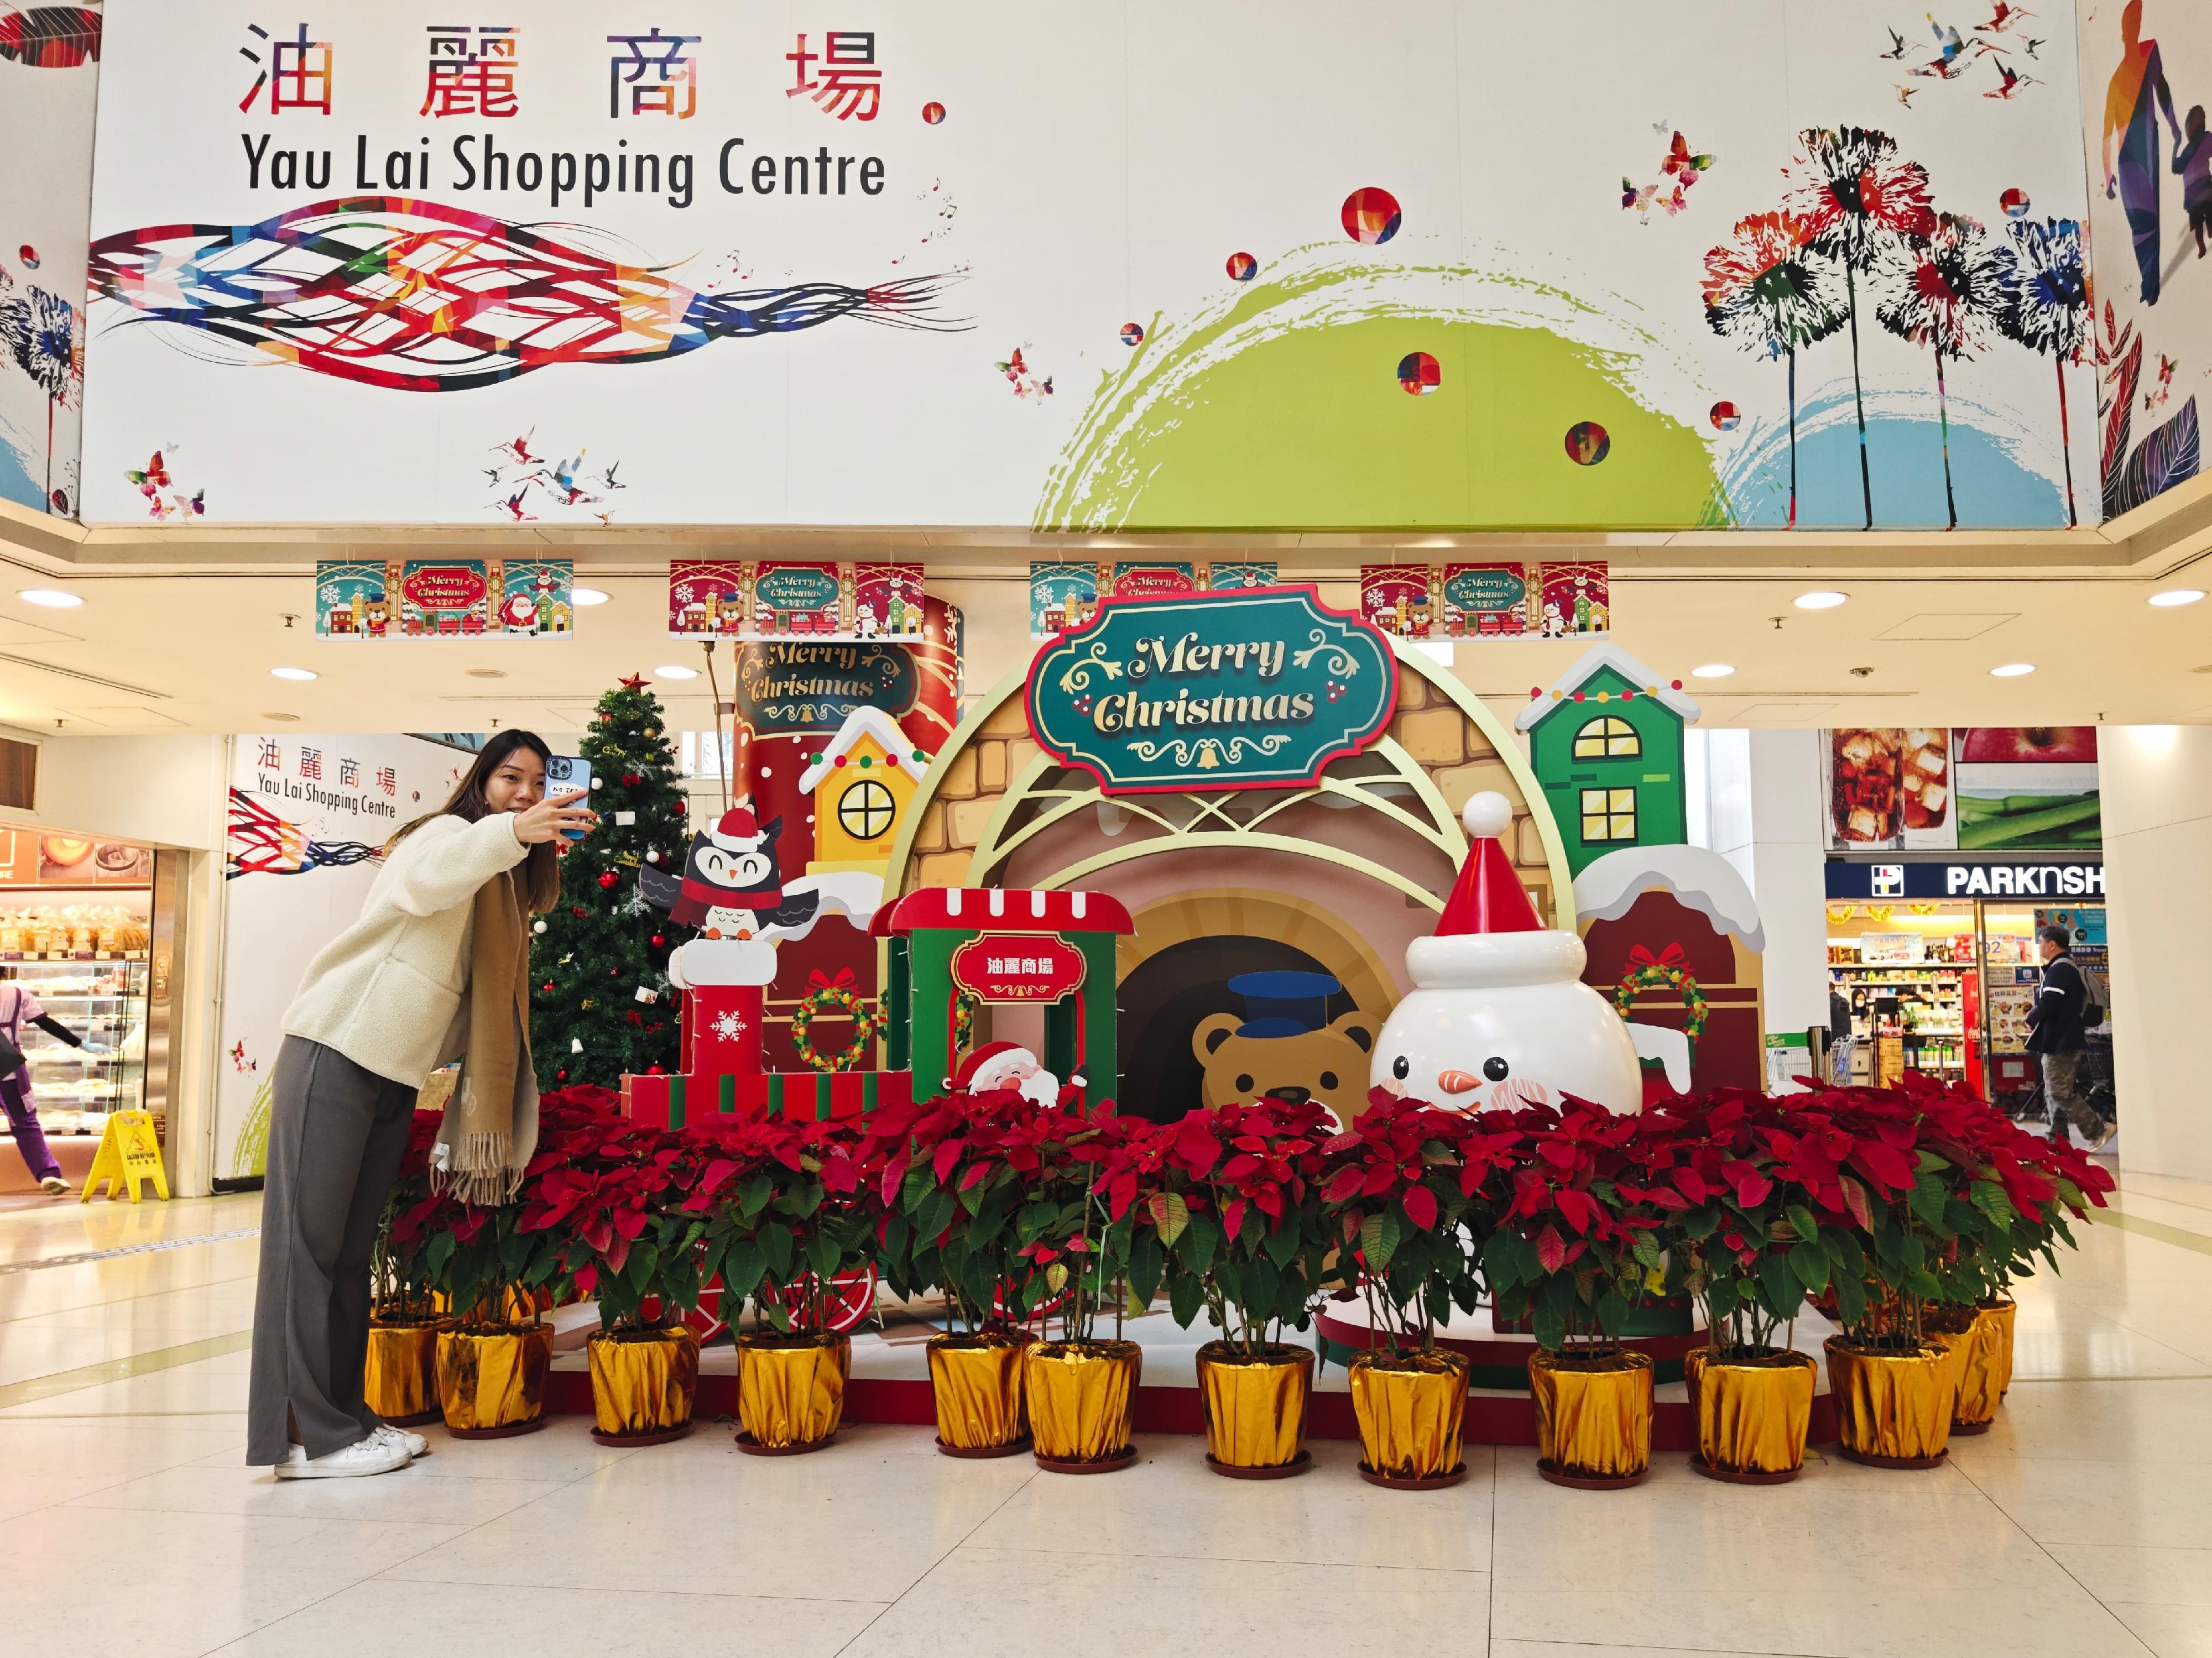 香港房屋委员会（房委会）于辖下多个商场举办圣诞节推广及夜缤纷活动，与市民欢度圣诞。图示房委会观塘油丽商场的圣诞节装饰。